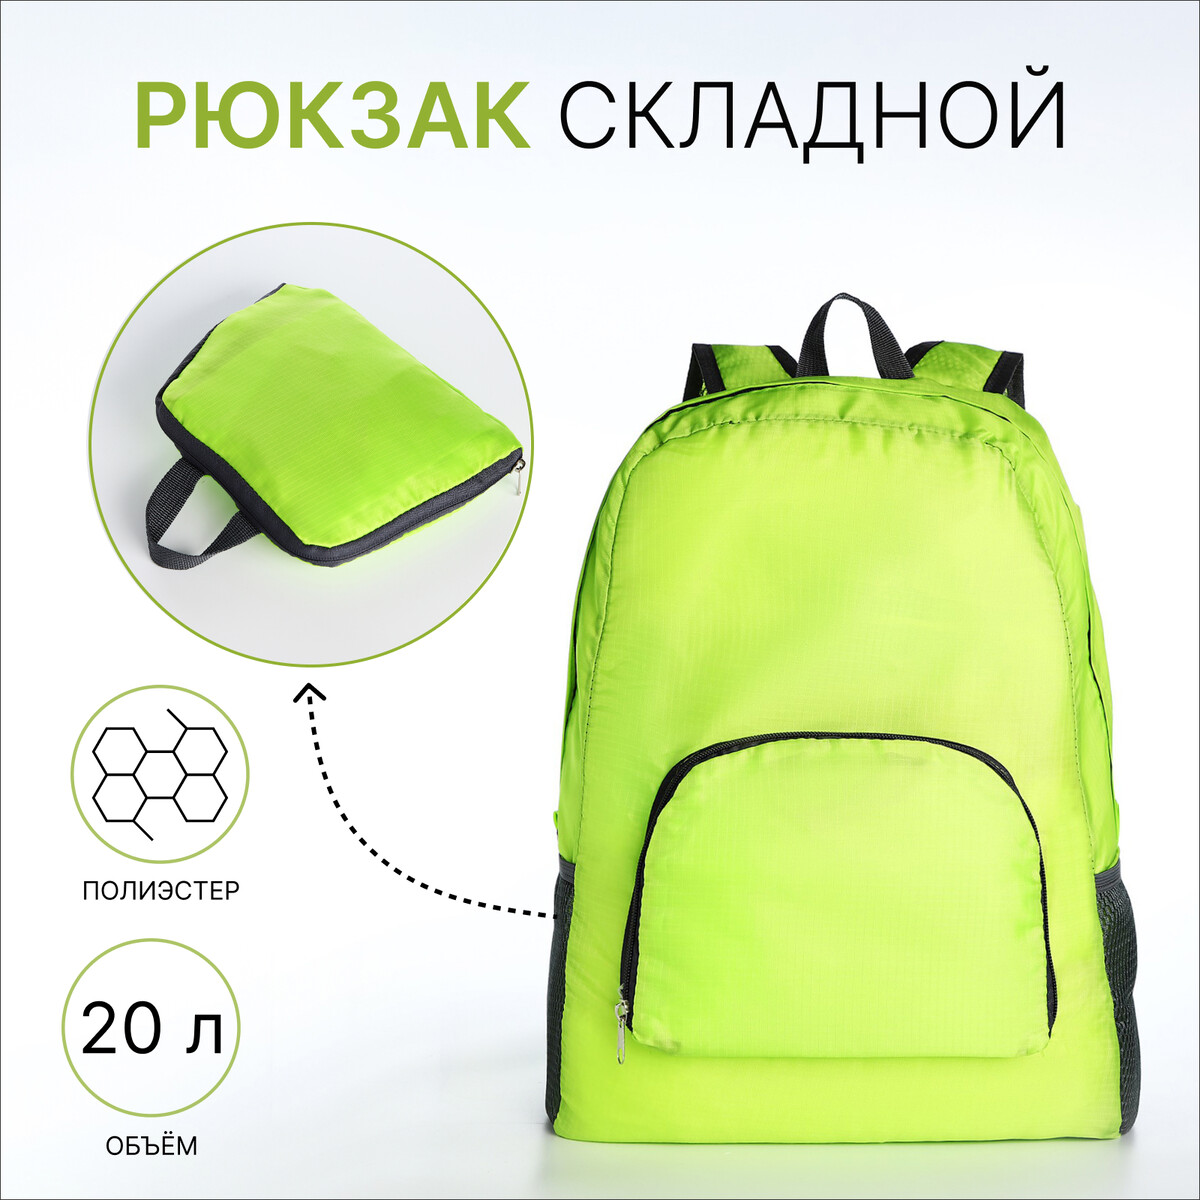 Рюкзак складной, отдел на молнии, наружный карман, 2 боковых кармана, цвет зеленый рюкзак складной отдел на молнии наружный карман 2 боковых кармана